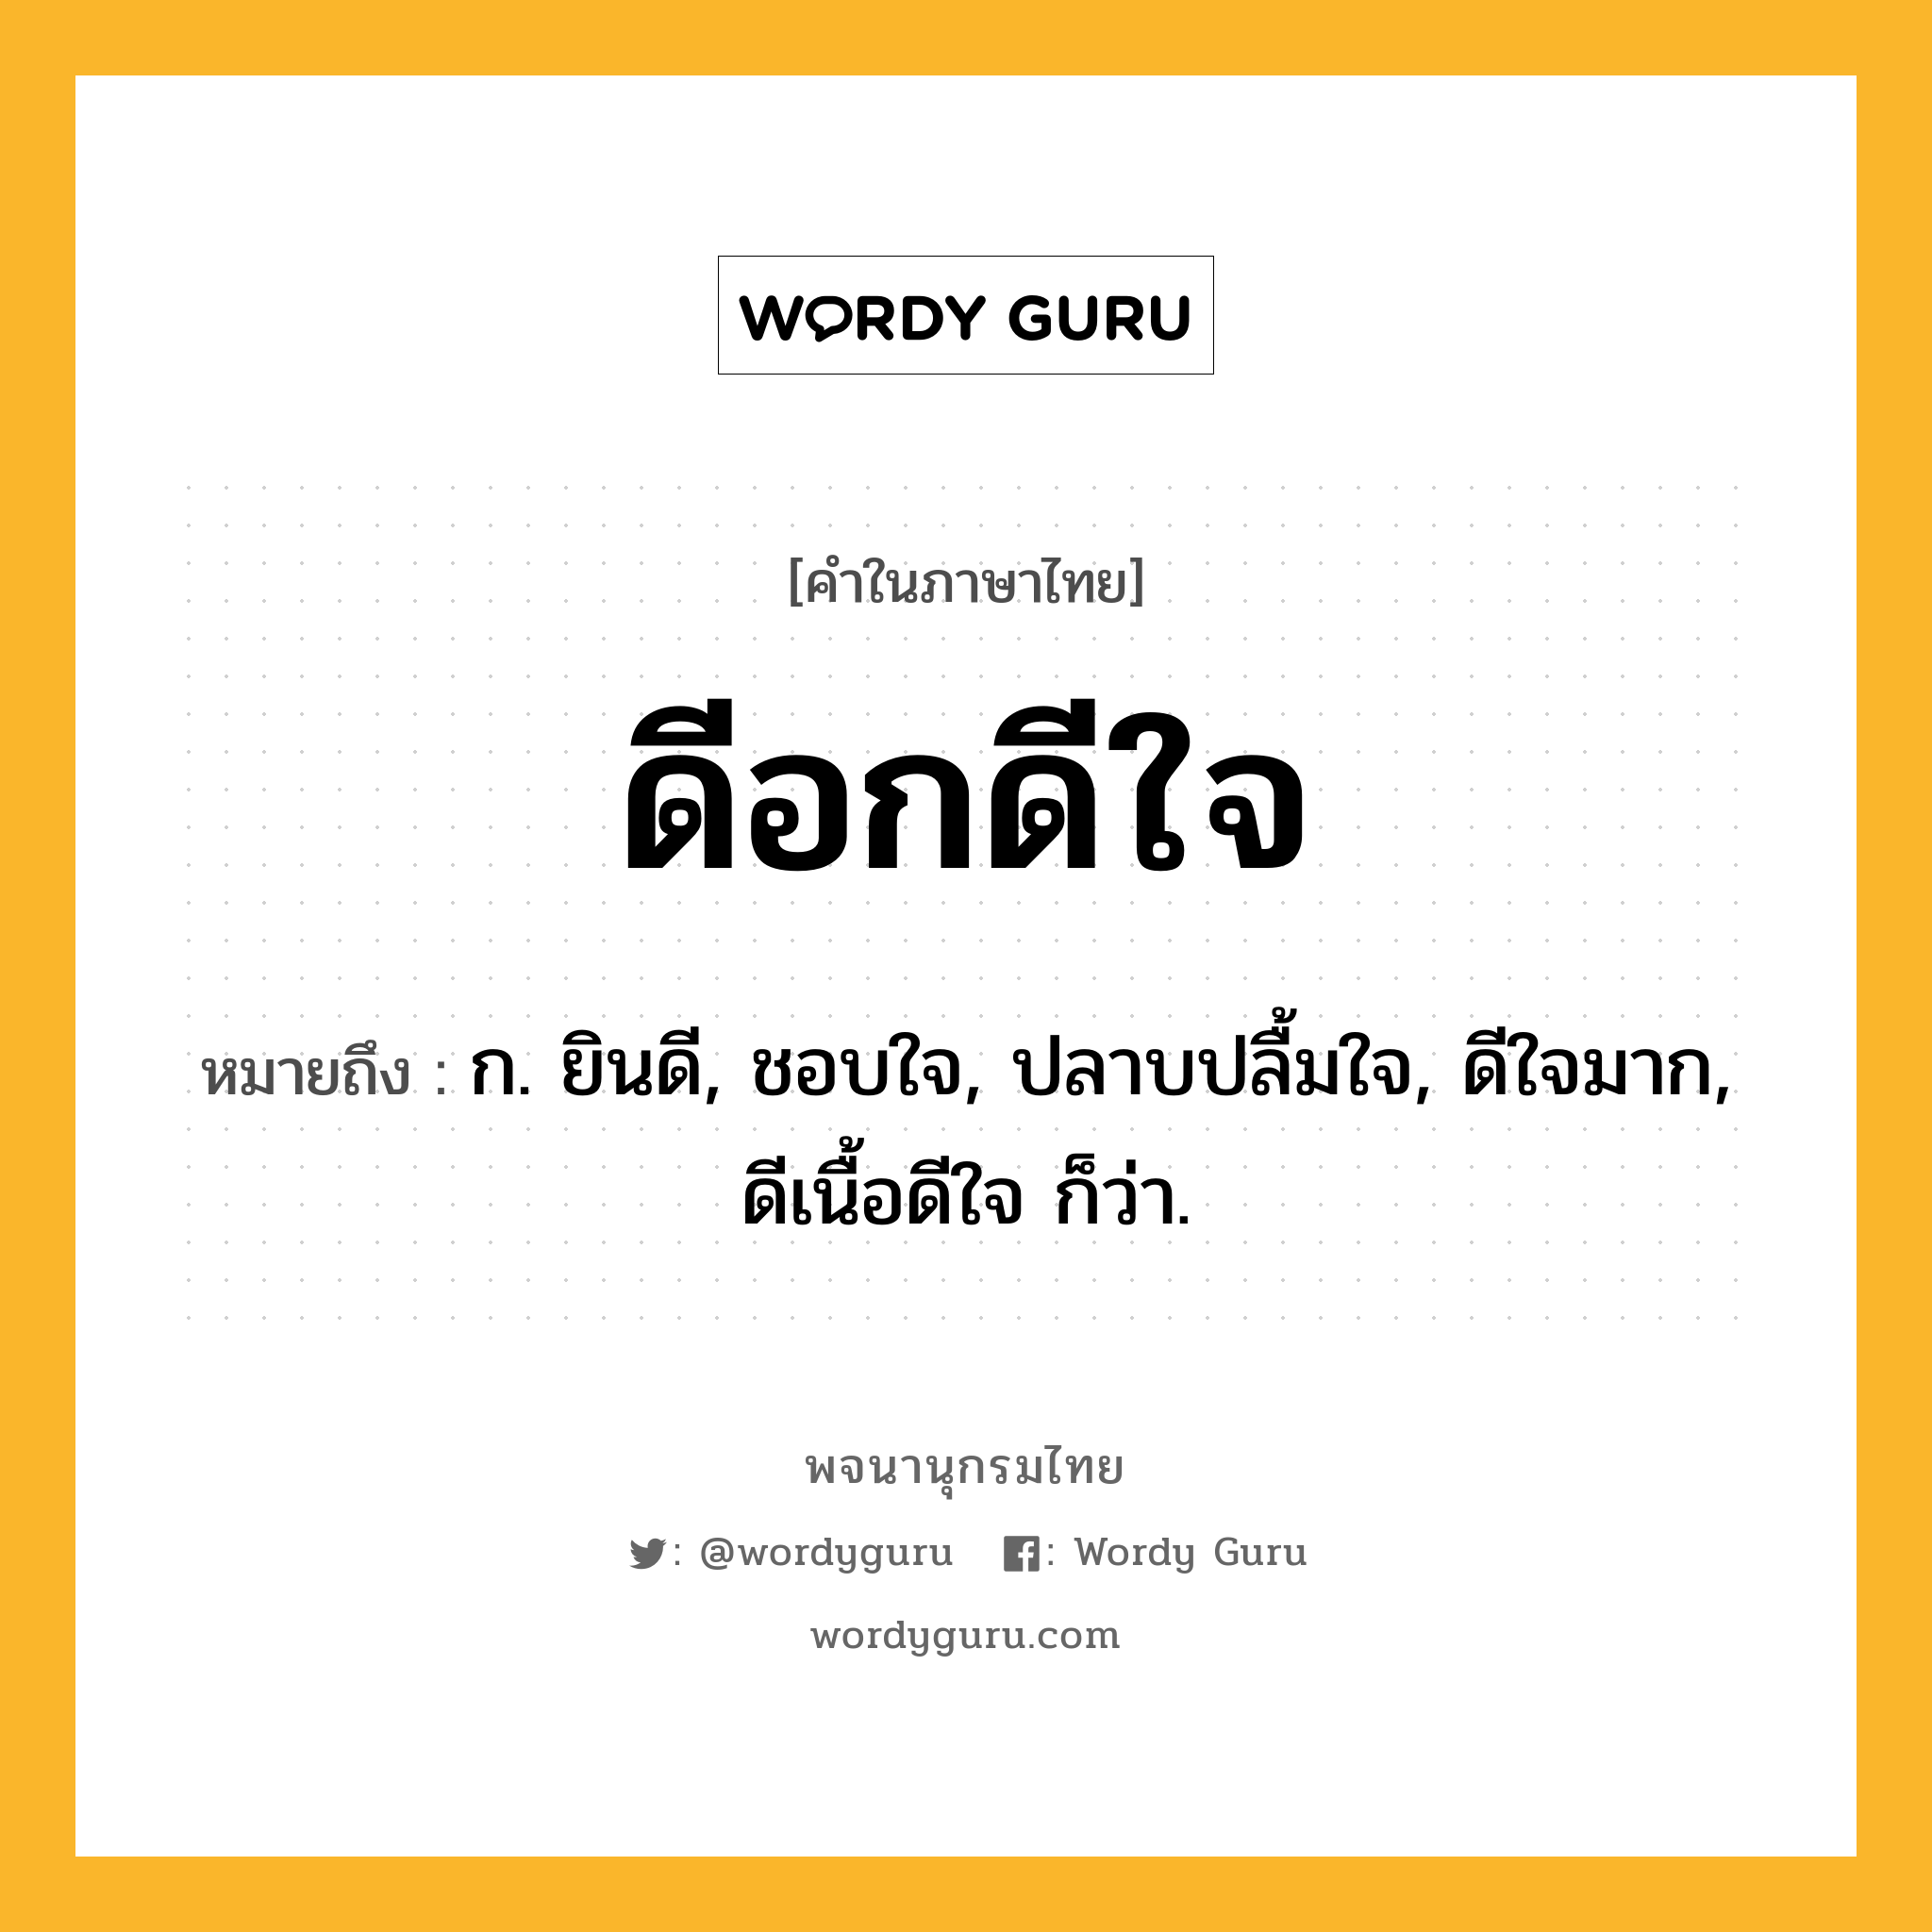 ดีอกดีใจ หมายถึงอะไร?, คำในภาษาไทย ดีอกดีใจ หมายถึง ก. ยินดี, ชอบใจ, ปลาบปลื้มใจ, ดีใจมาก, ดีเนื้อดีใจ ก็ว่า.